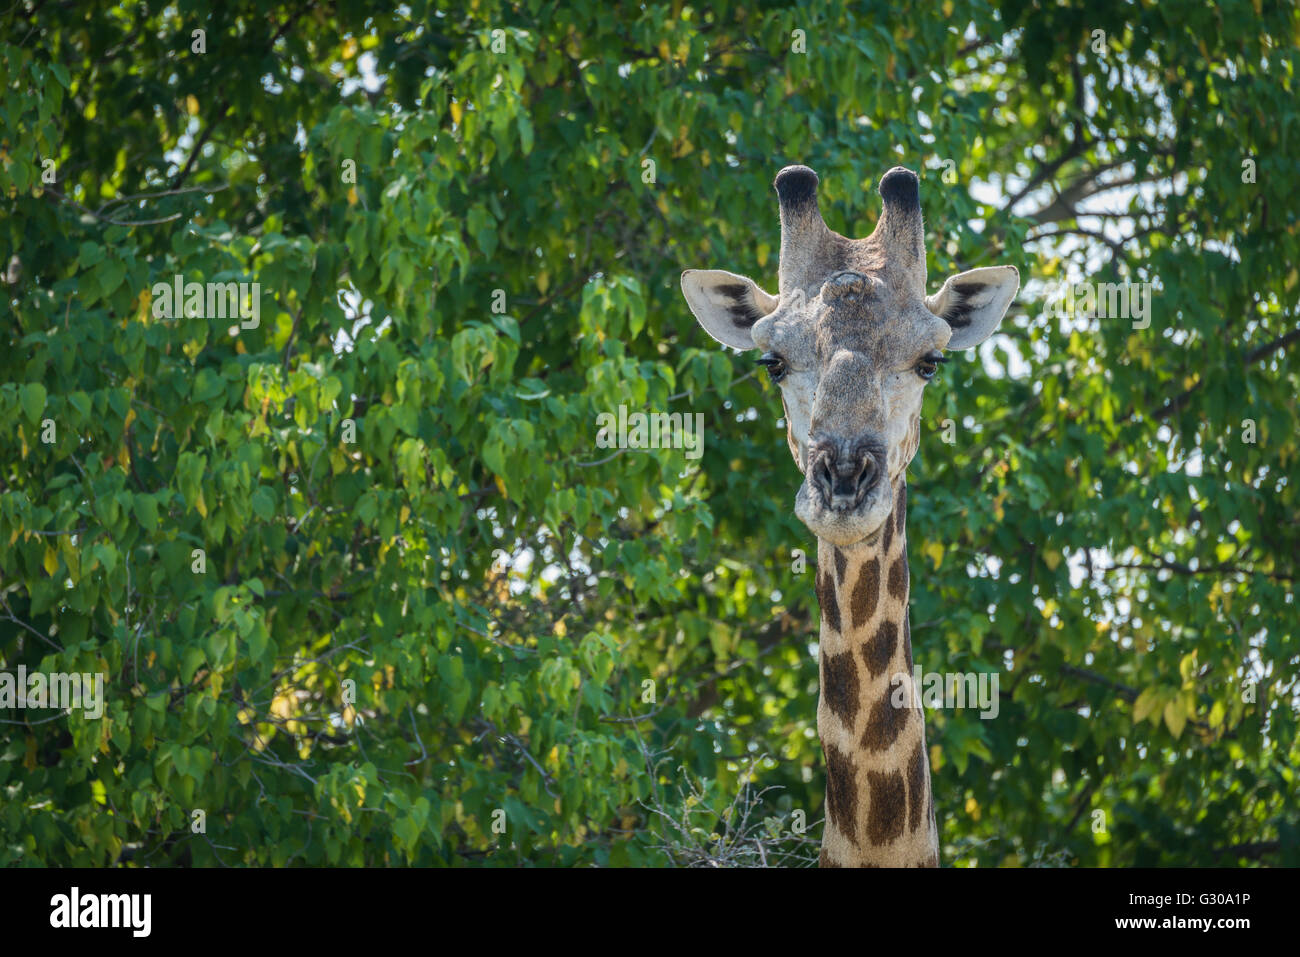 Close-up of girafe d'Afrique du Sud dans les arbres Banque D'Images